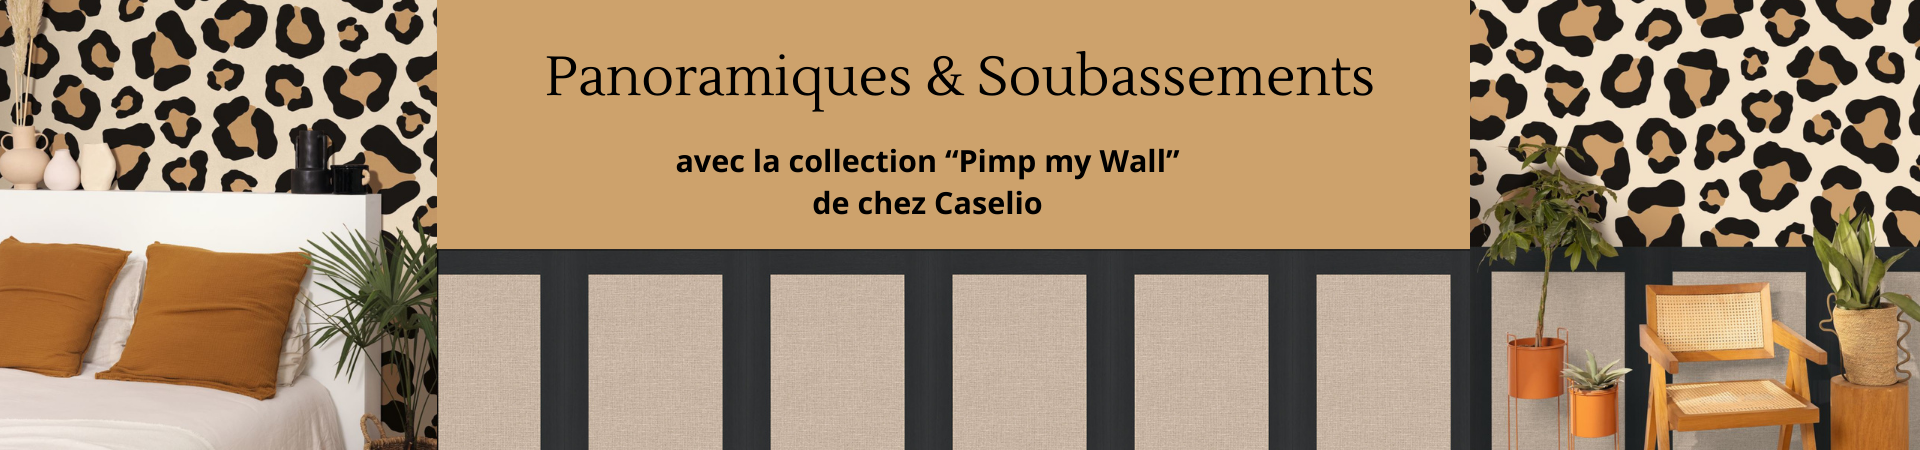 Panoramiques et soubassements avec la collection "Pimp My Wall"